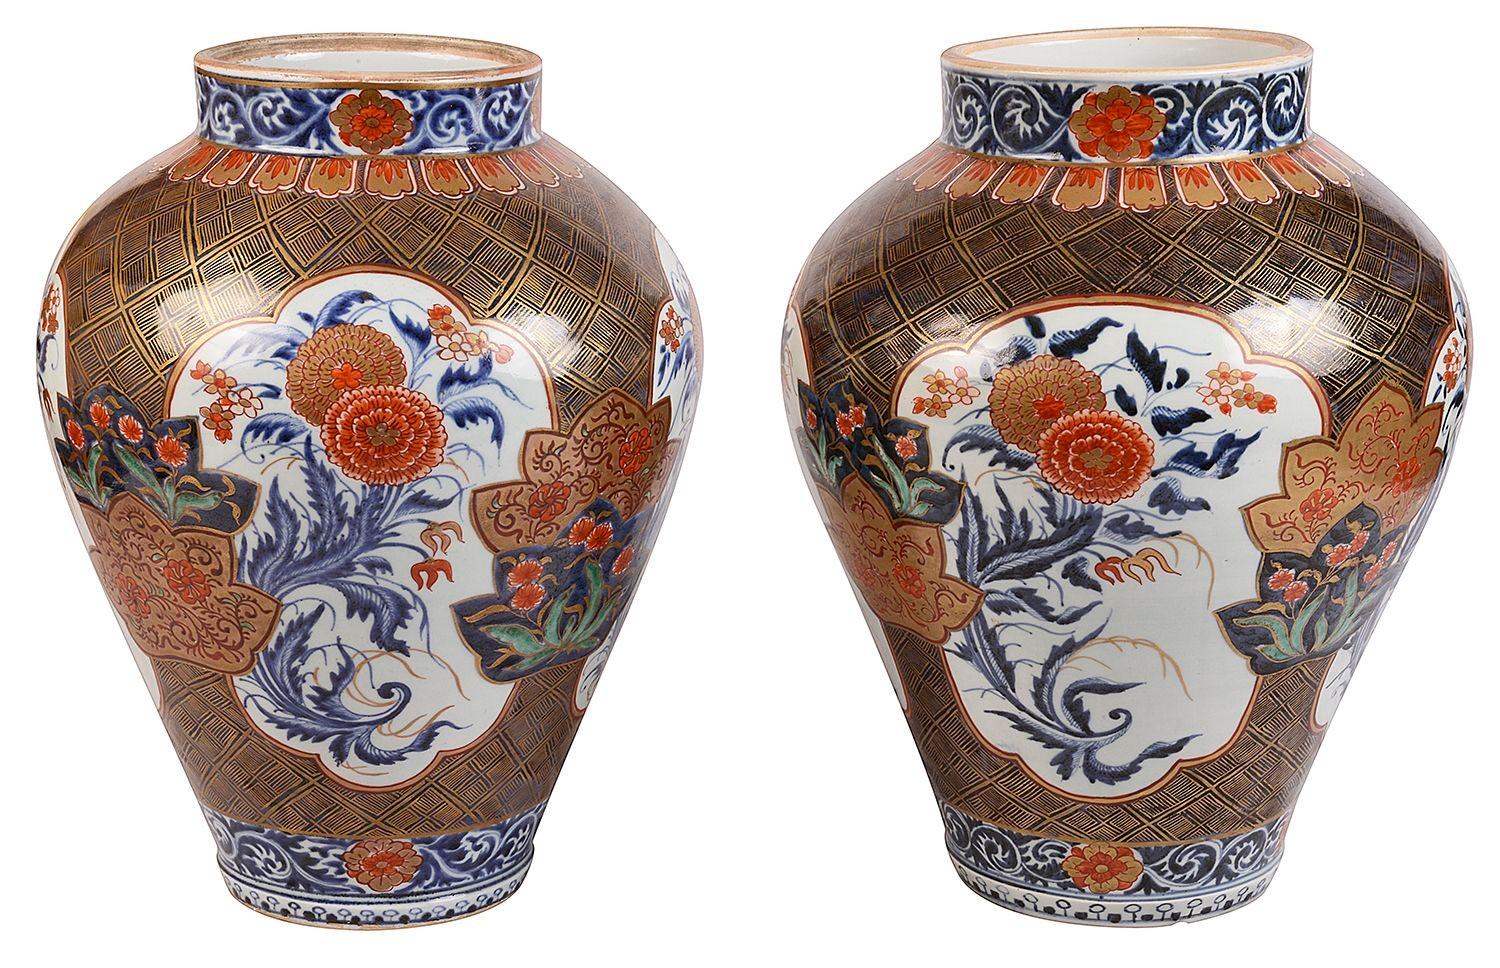 Paire de vases Imari en porcelaine japonaise Arita de la fin du XVIIIe siècle, d'une qualité exceptionnelle, chacun avec de magnifiques couleurs vives, représentant des panneaux insérés de fleurs exotiques sur un fond de motifs classiques, vers